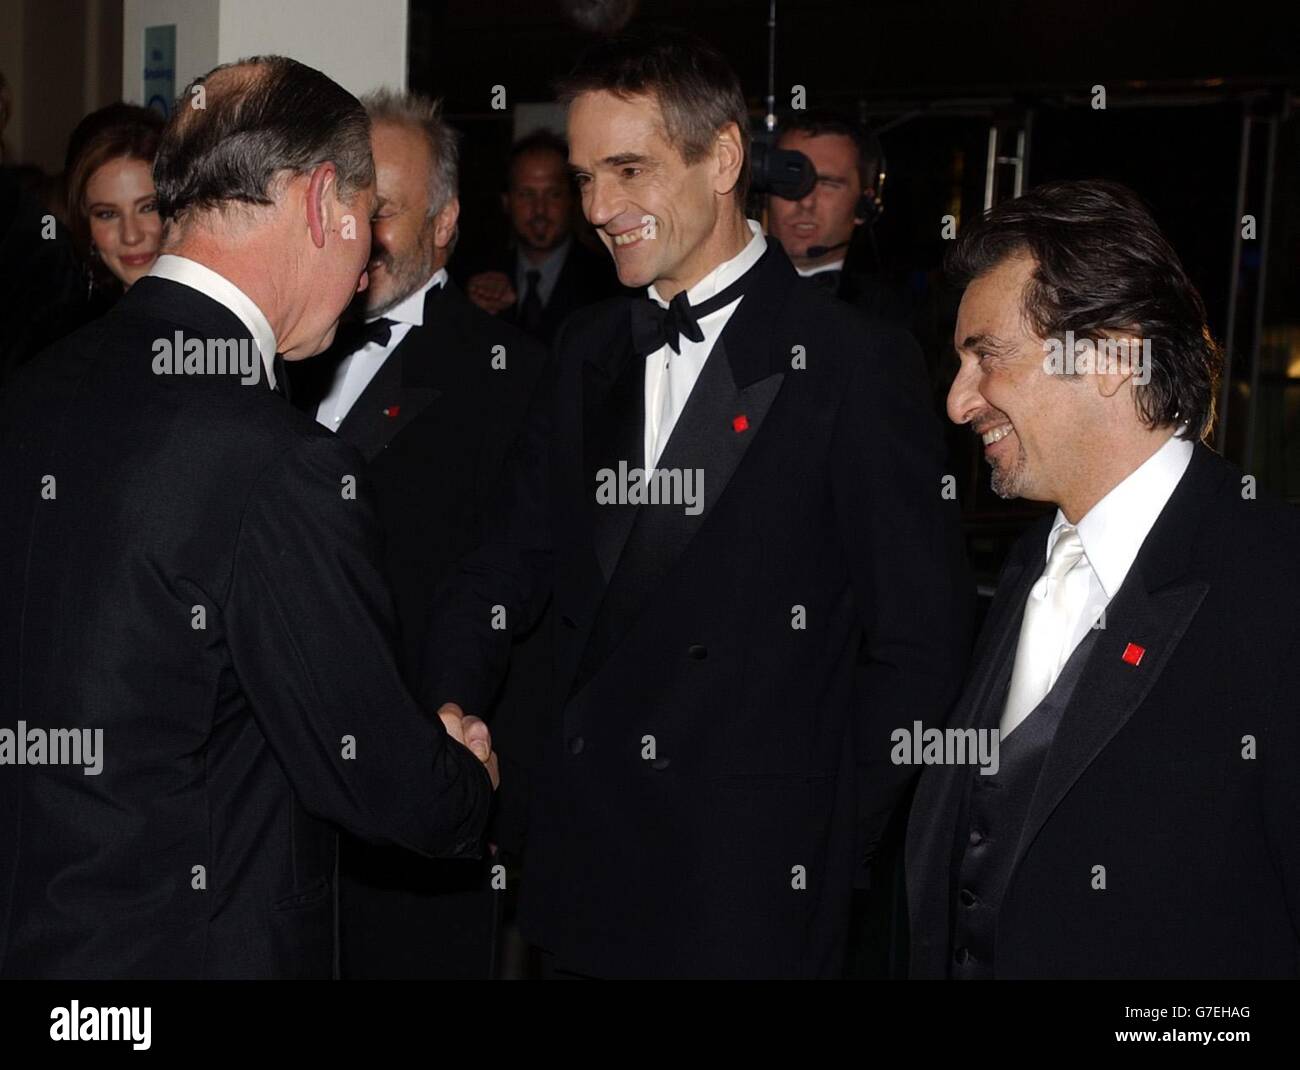 Le prince Charles de Grande-Bretagne, le prince de Galles (à gauche) rencontre les acteurs Jeremy Irons (au centre) et Al Pacino (à droite) lors de la première européenne du marchand de Venise sur Leicester Square à Londres. Banque D'Images